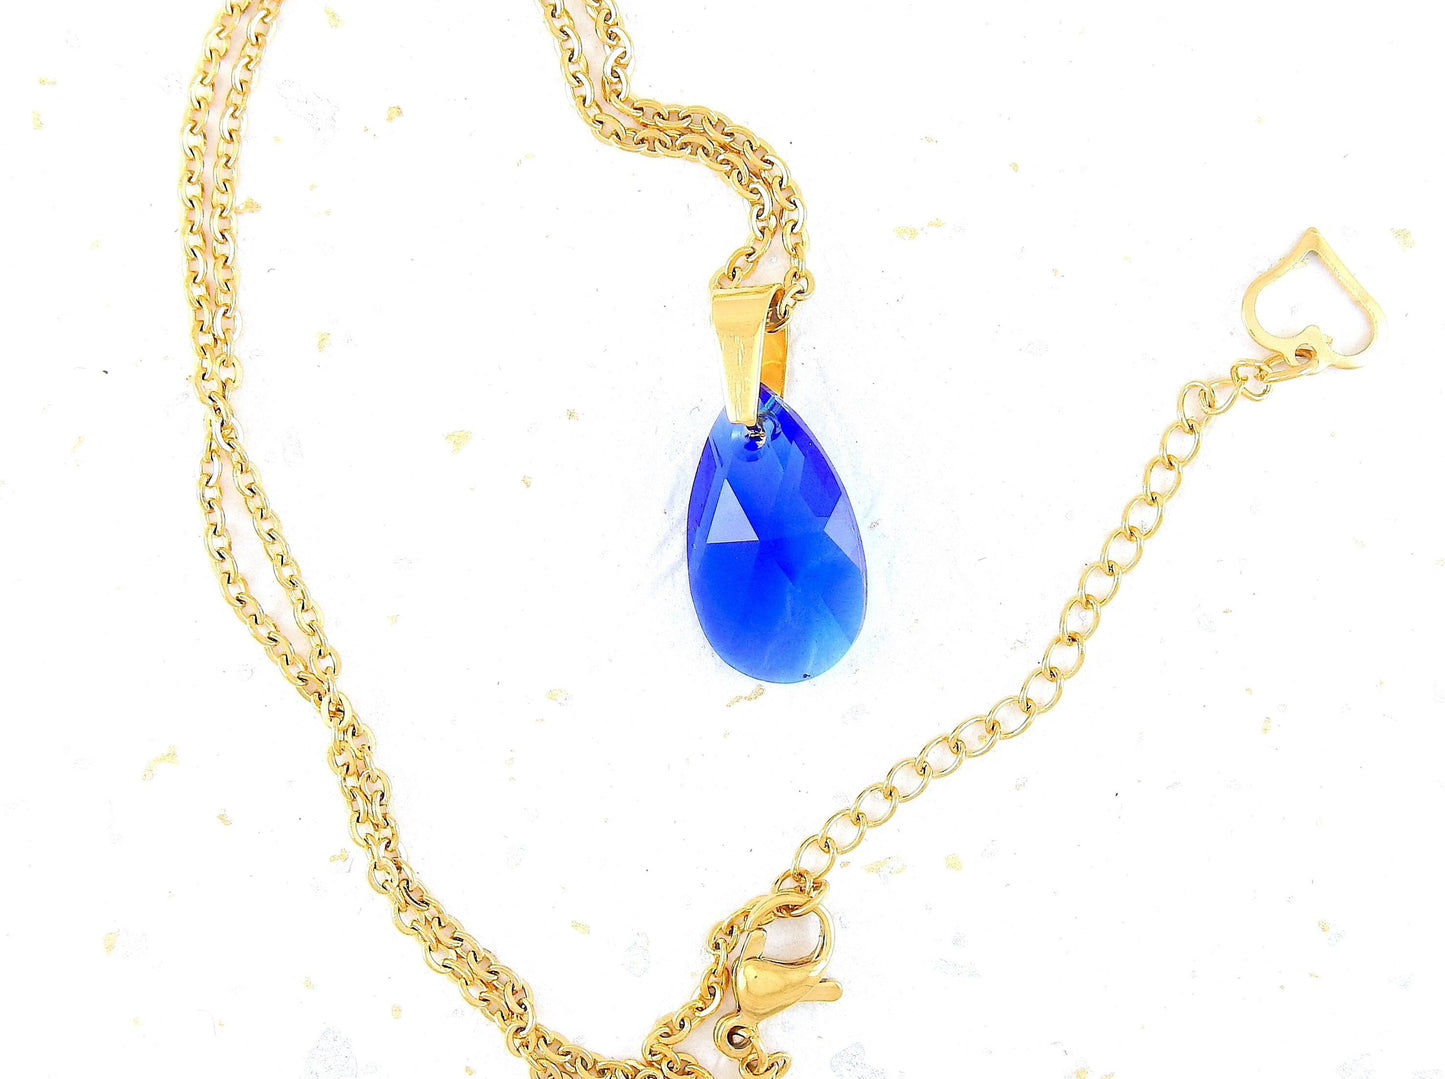 Collier 15 po avec pendentif goutte de cristal Swarovski 20mm bleu Majestic, chaîne acier inoxydable dorée